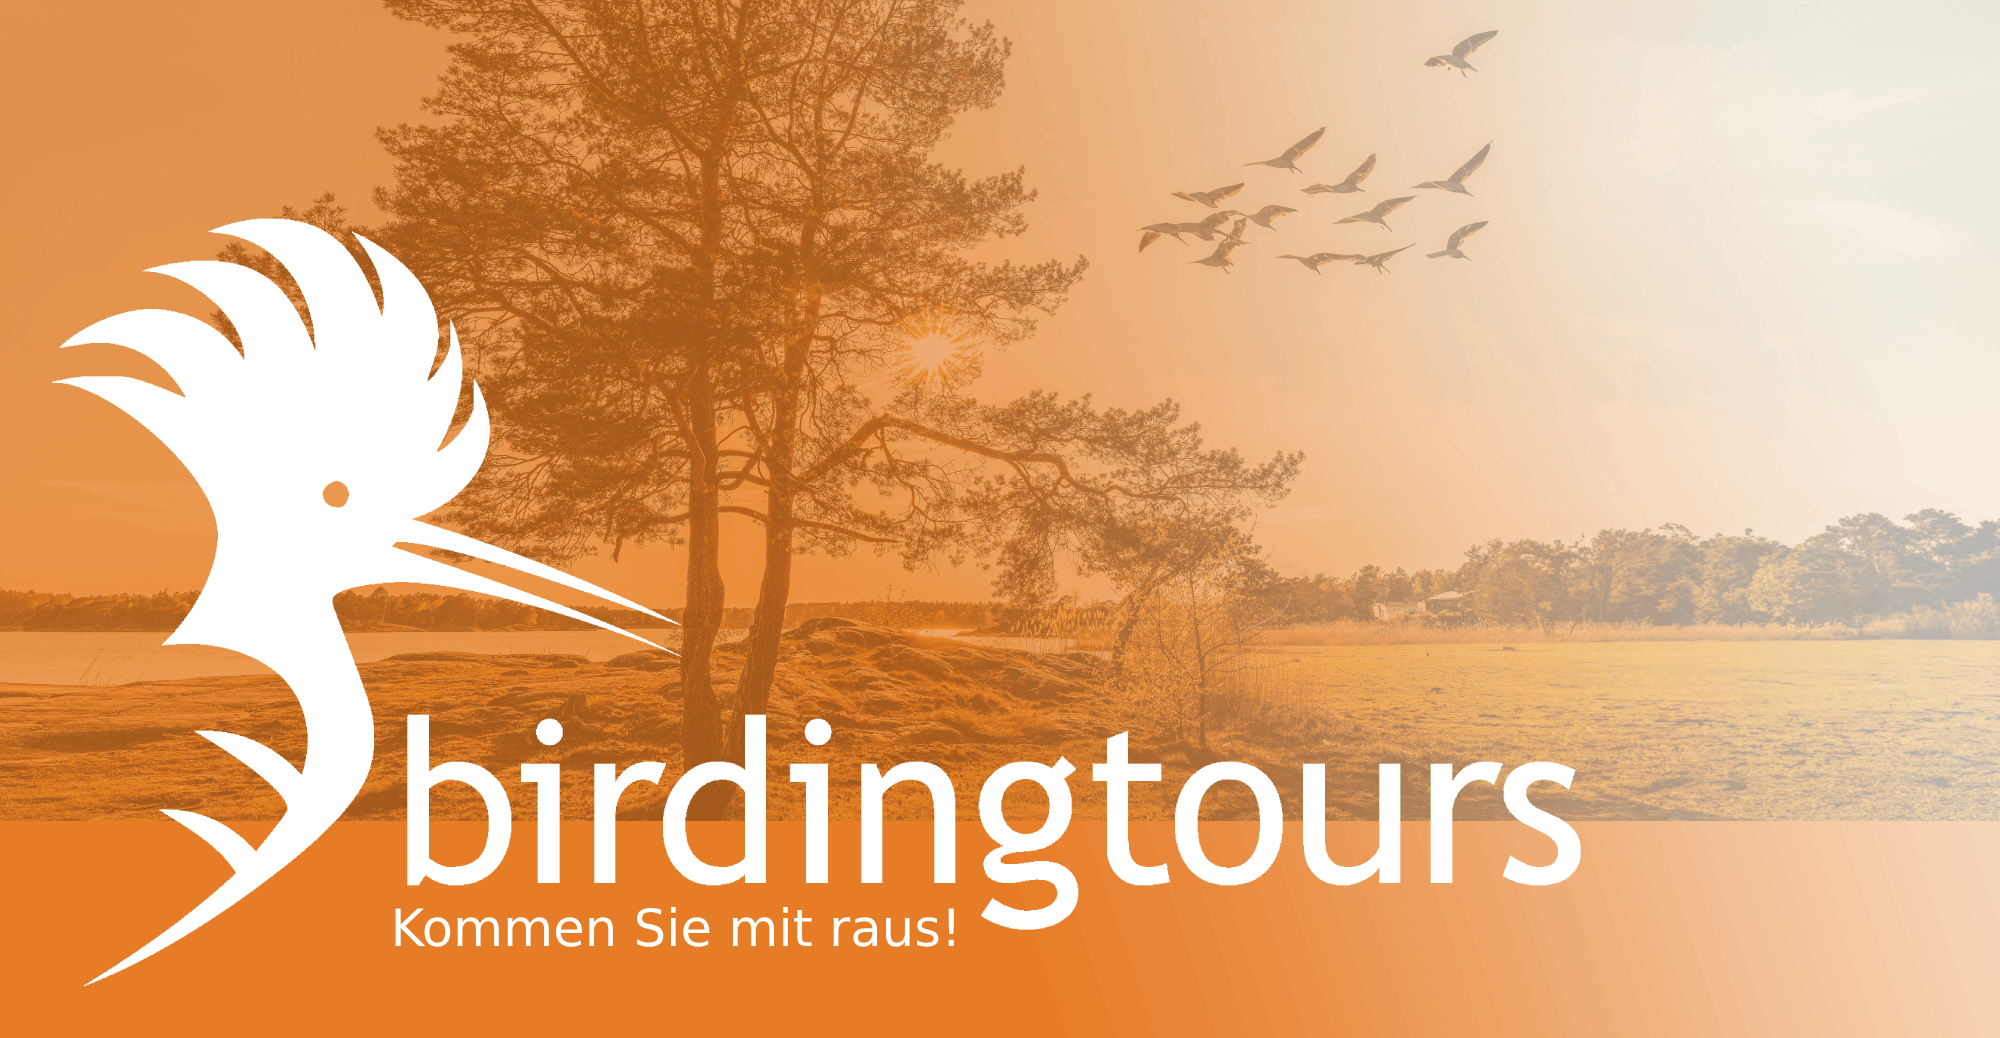 reisen-mit-birdingtours-logo